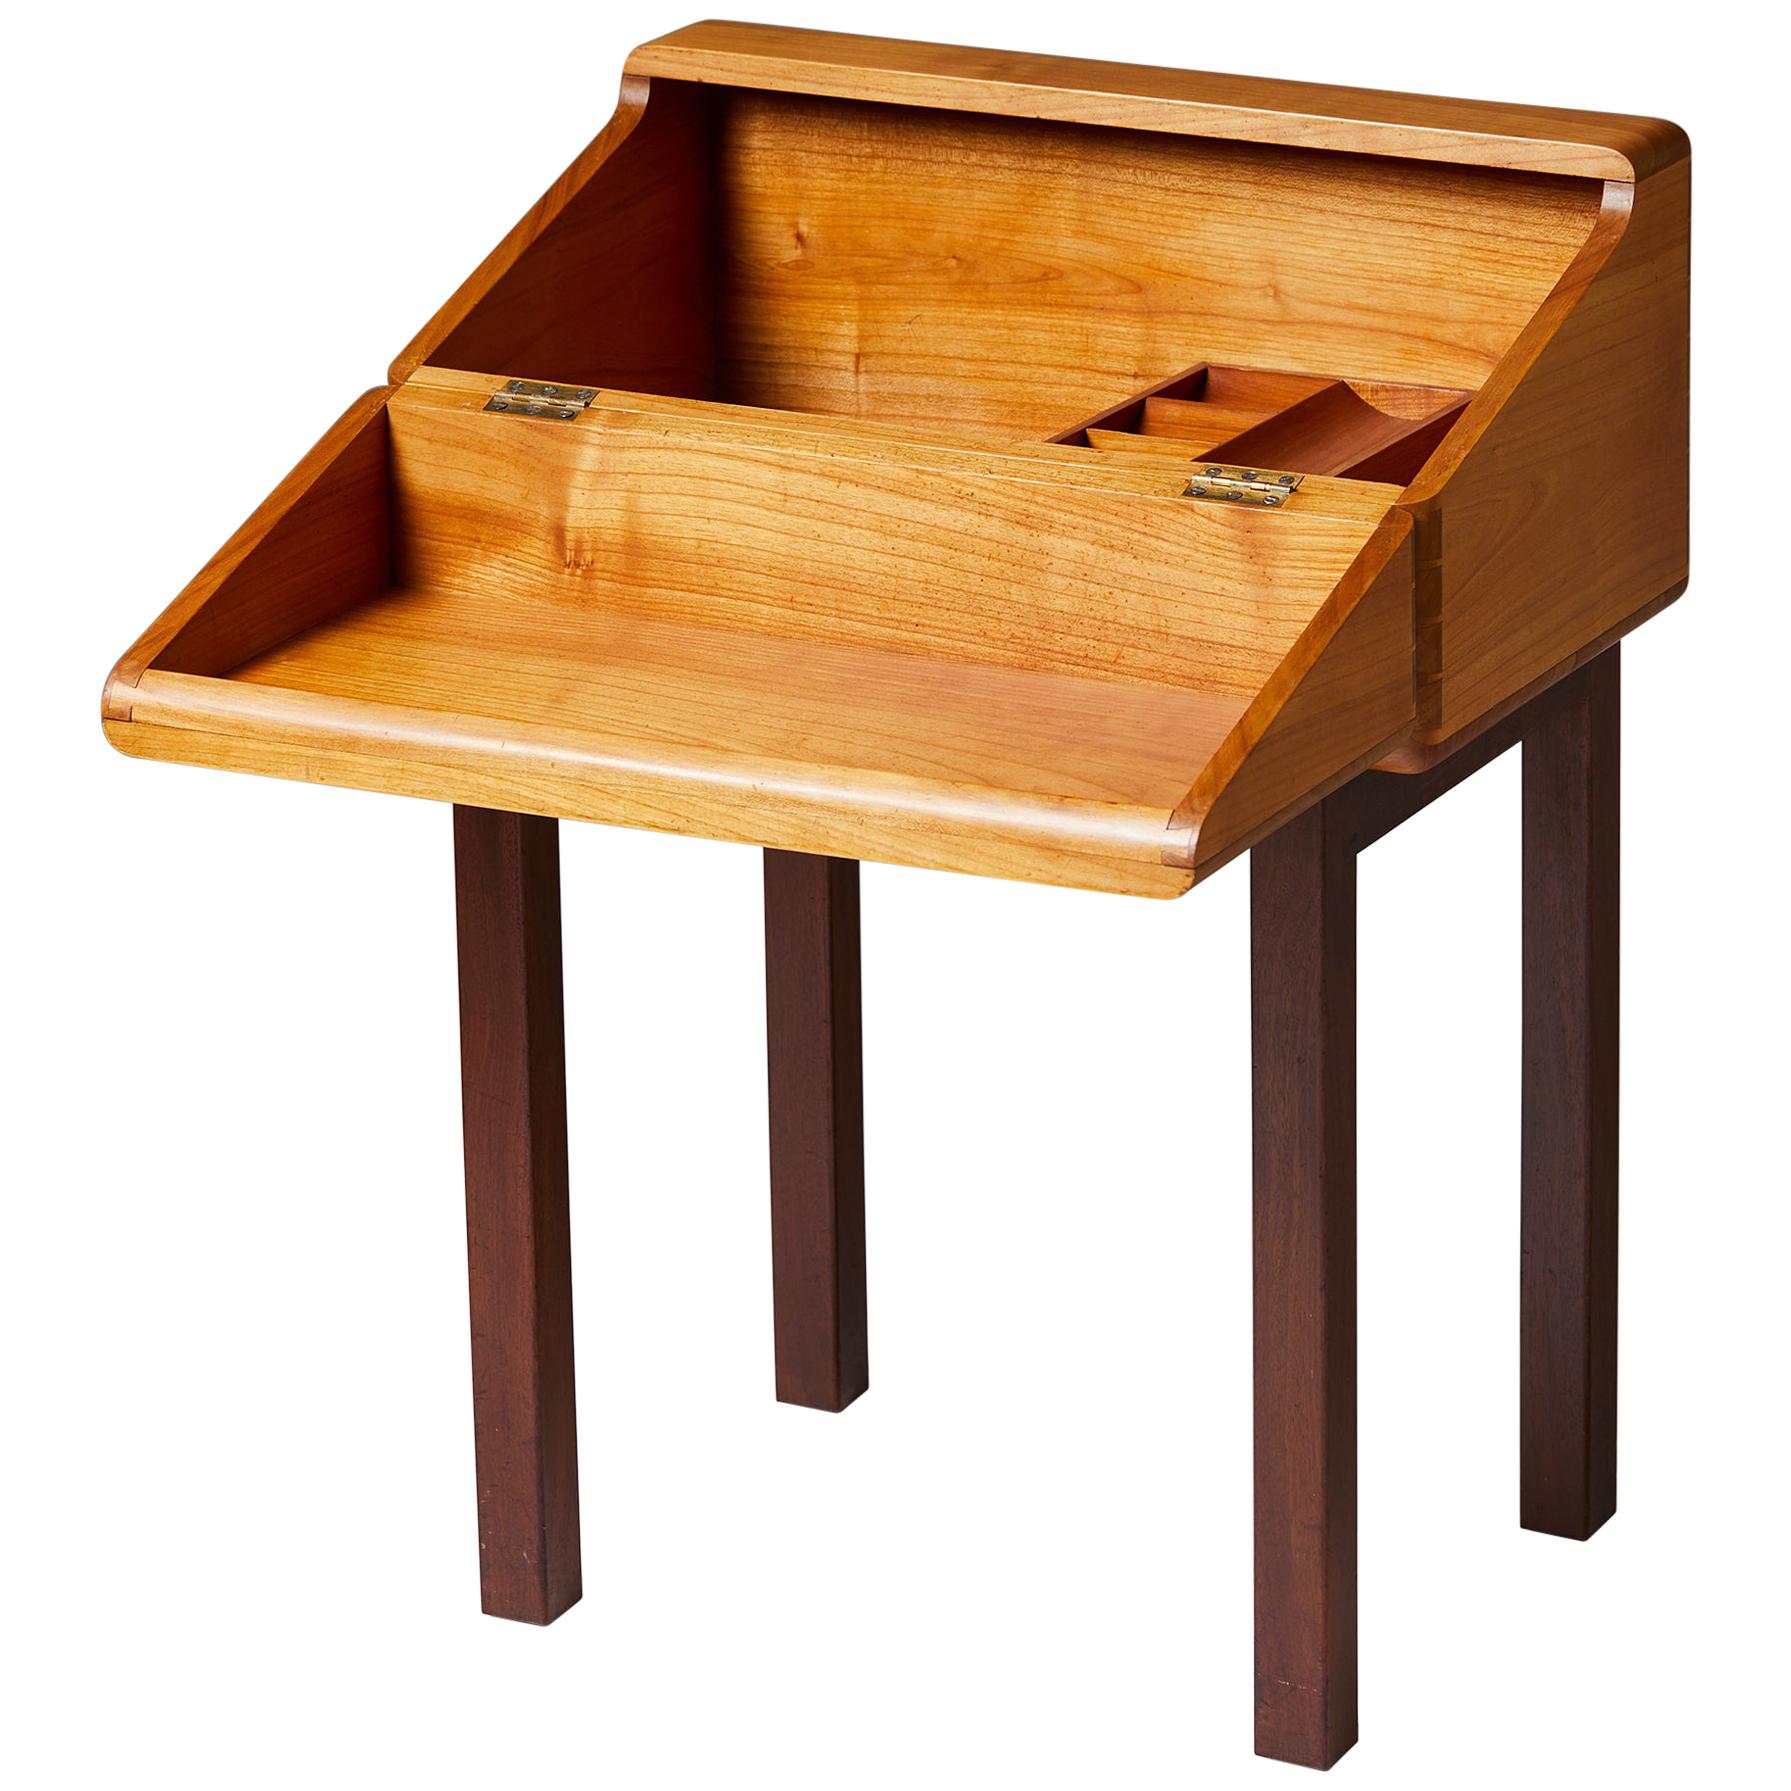 Sewing Box Designed by Magnus L. Stephensen for Axel Søllner, Denmark, 1935